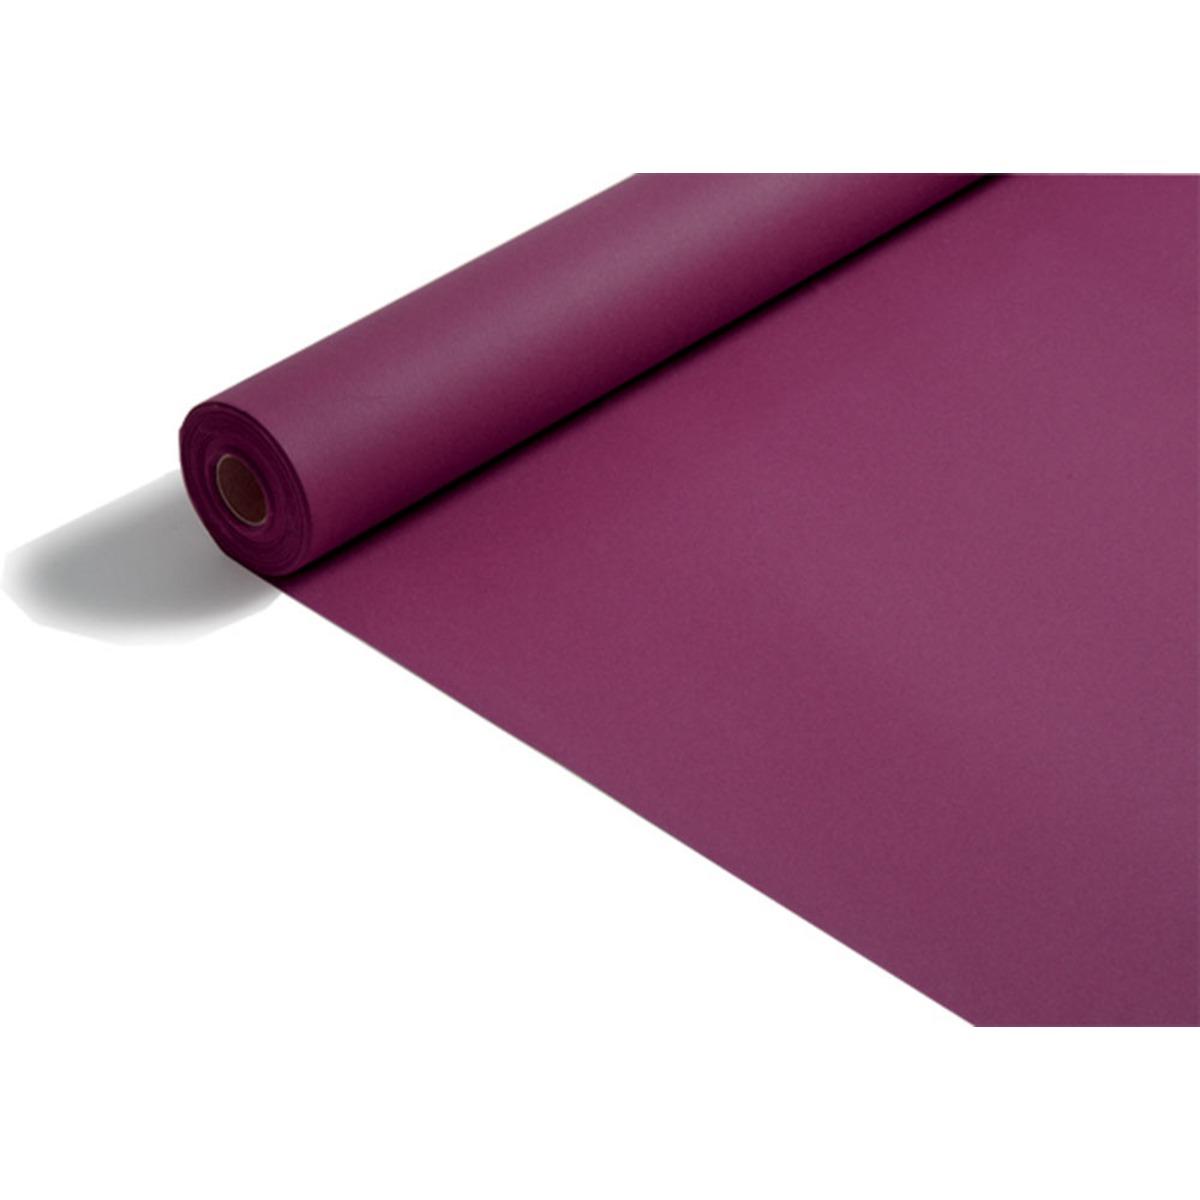 Nappe voie sèche - 1,2 x 10 mètres - Violet prune